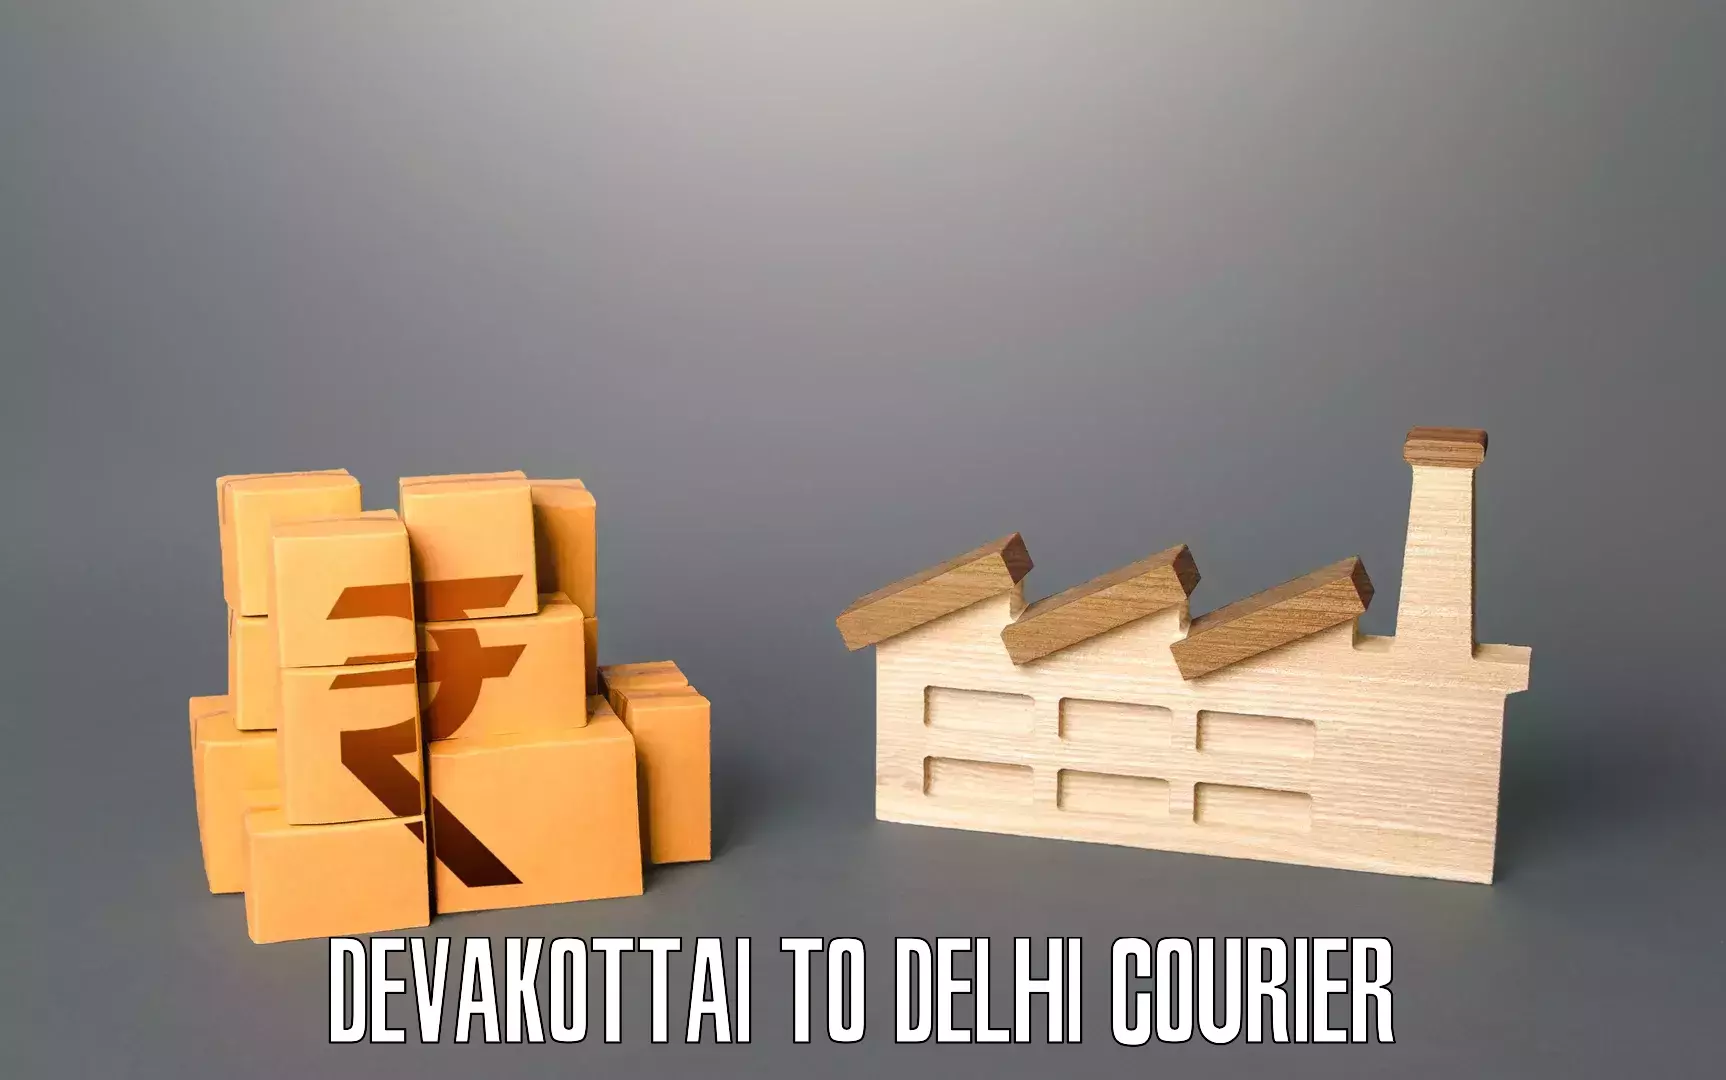 Professional packing and transport Devakottai to Jawaharlal Nehru University New Delhi